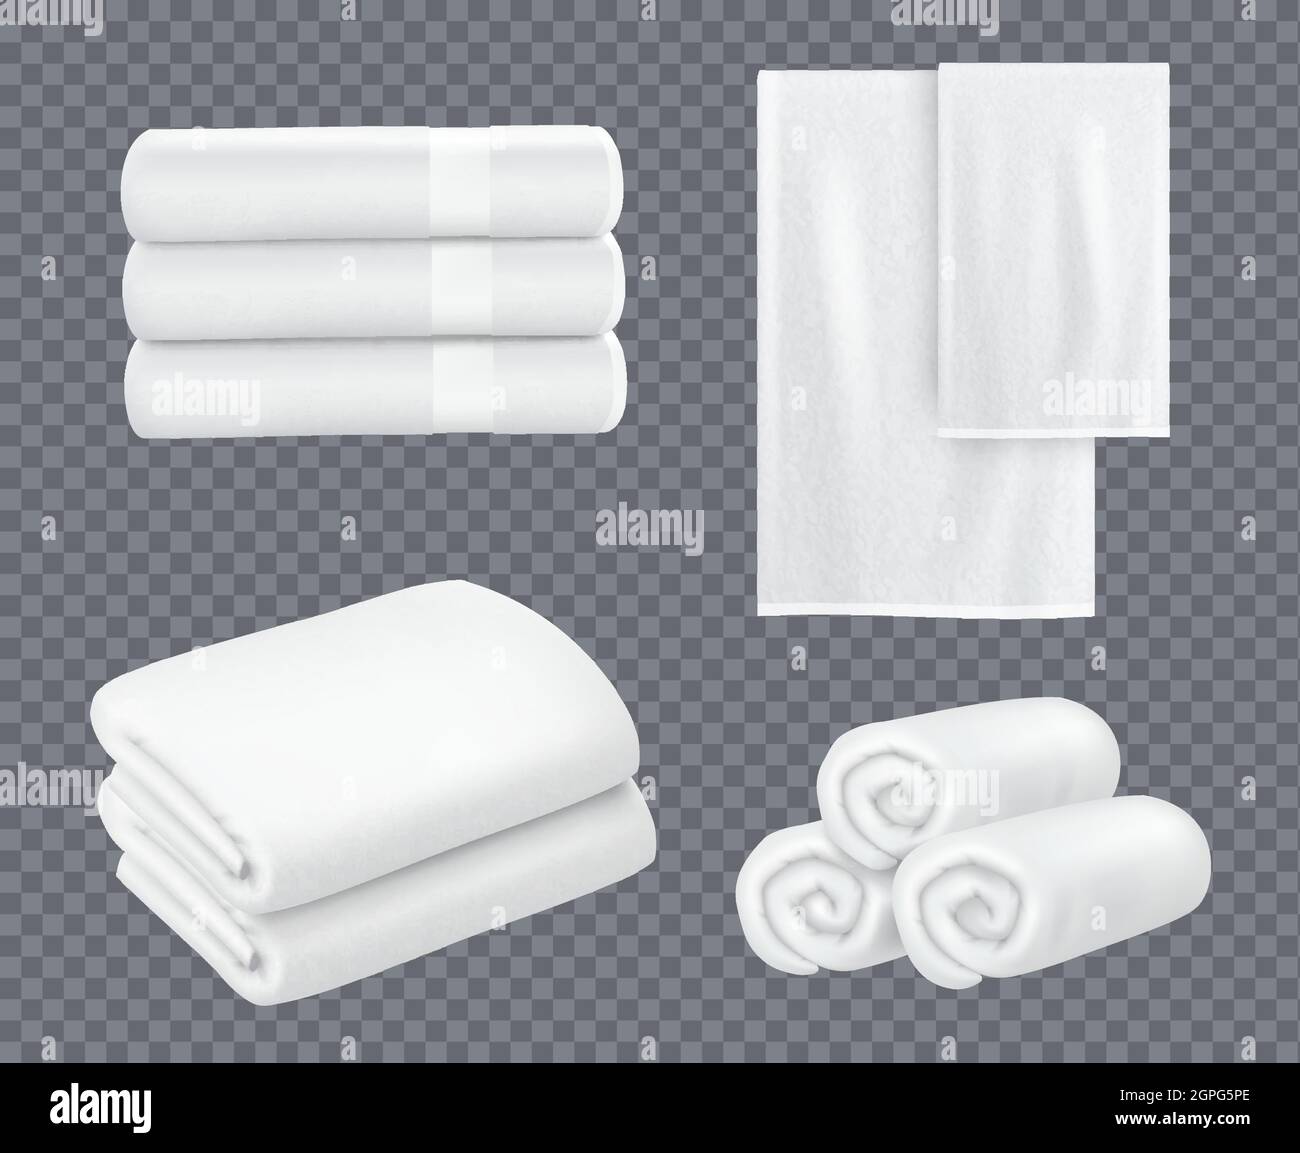 Weißes Handtuch. Hotel Bad Hygiene Textil gestapelt schöne frische Handtücher für Waschraum Vektor realistische Sets Stock Vektor